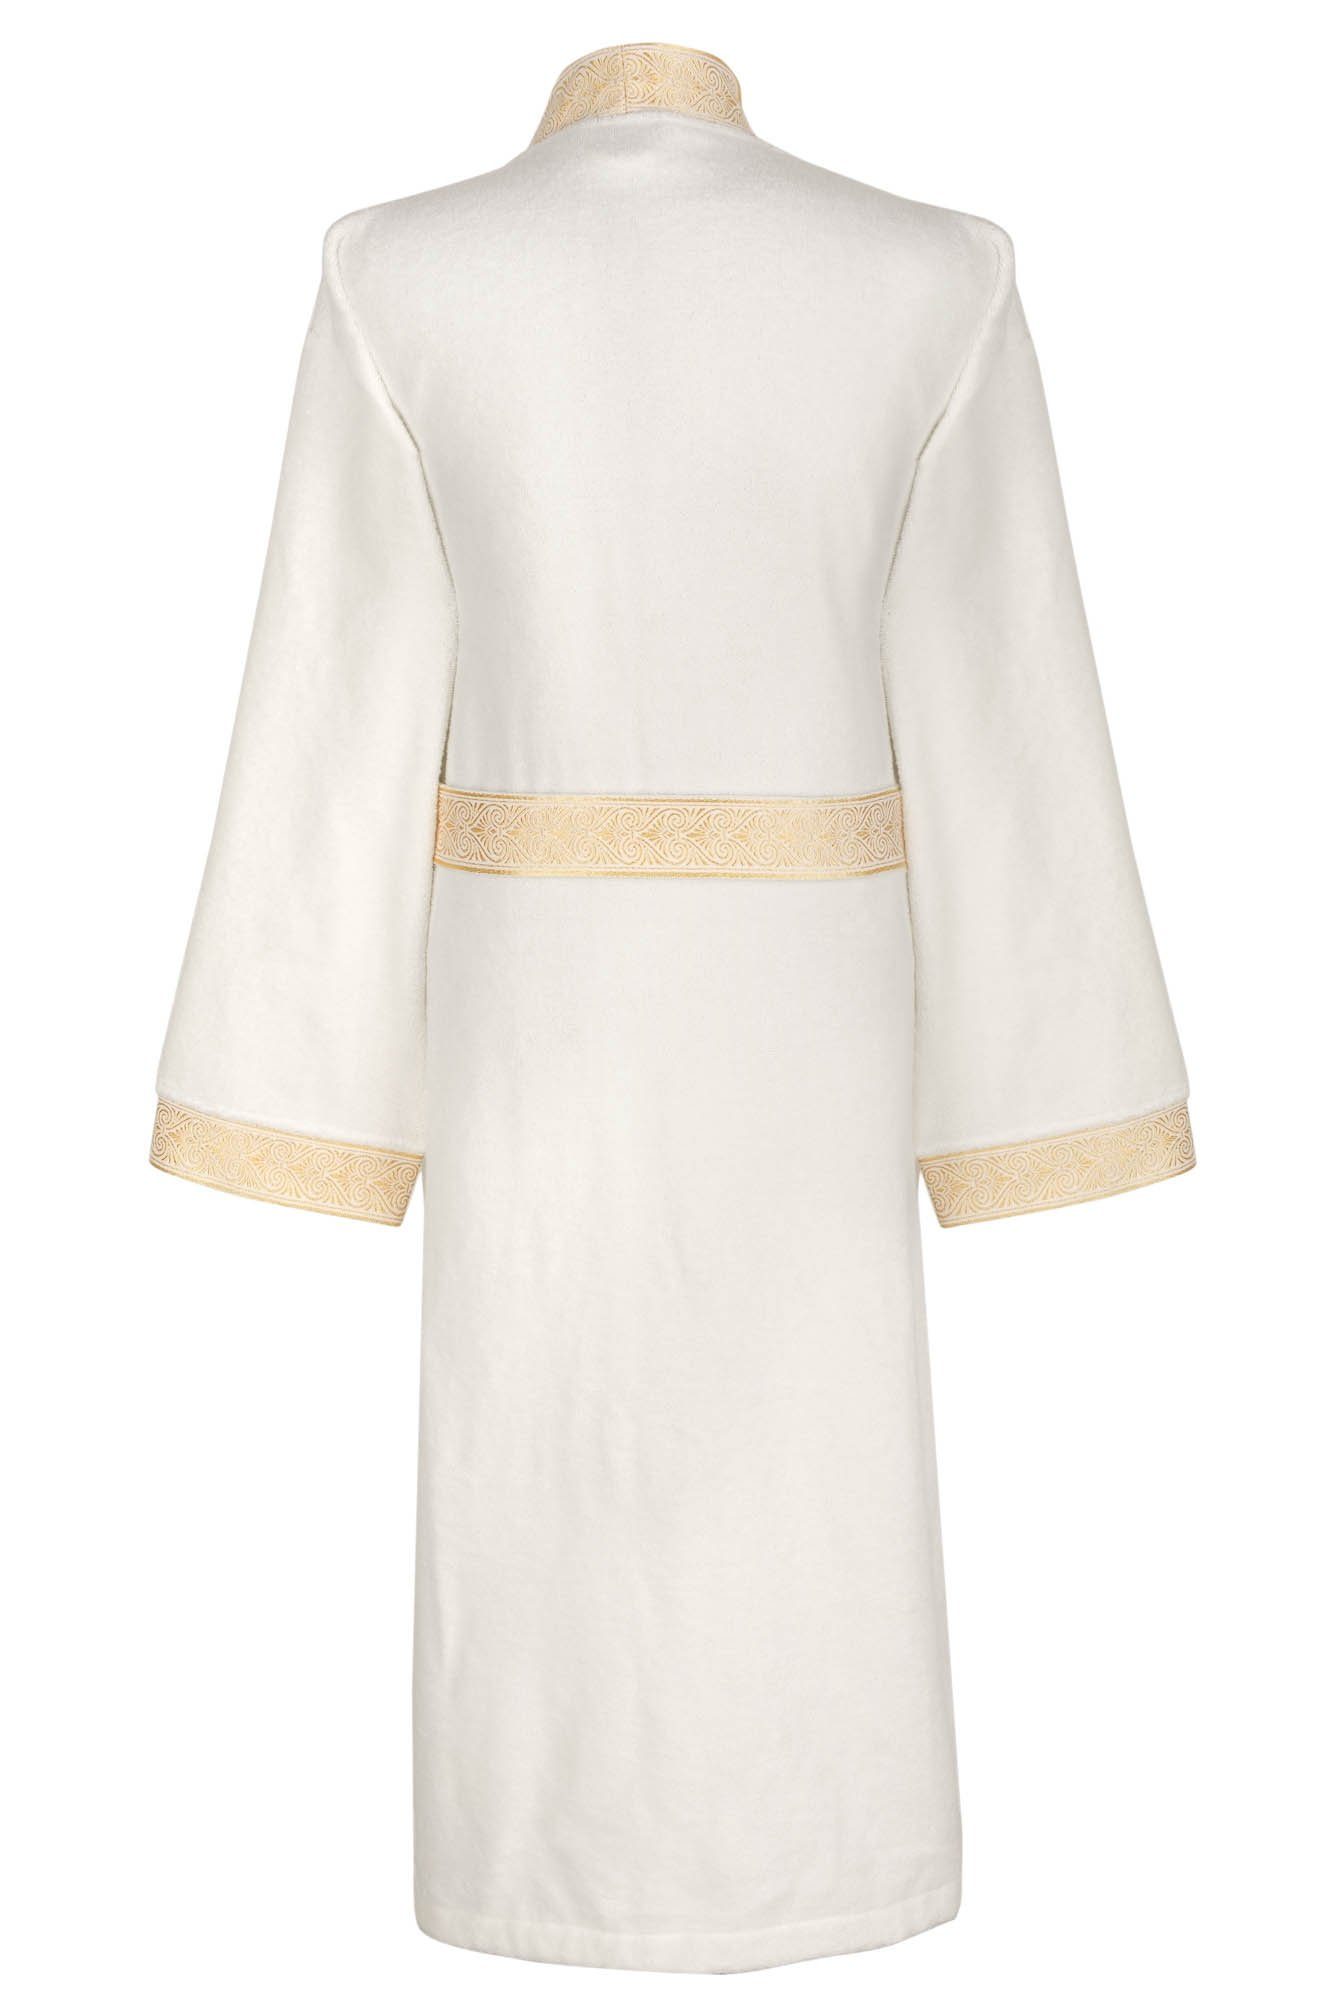 Blende S, Ornament Baumwolle, Weiß, Optik, Gold 100% Bindegürtel, Kimono-Kragen, gestickte Geschenkverpackung mit Aymando Bademantel